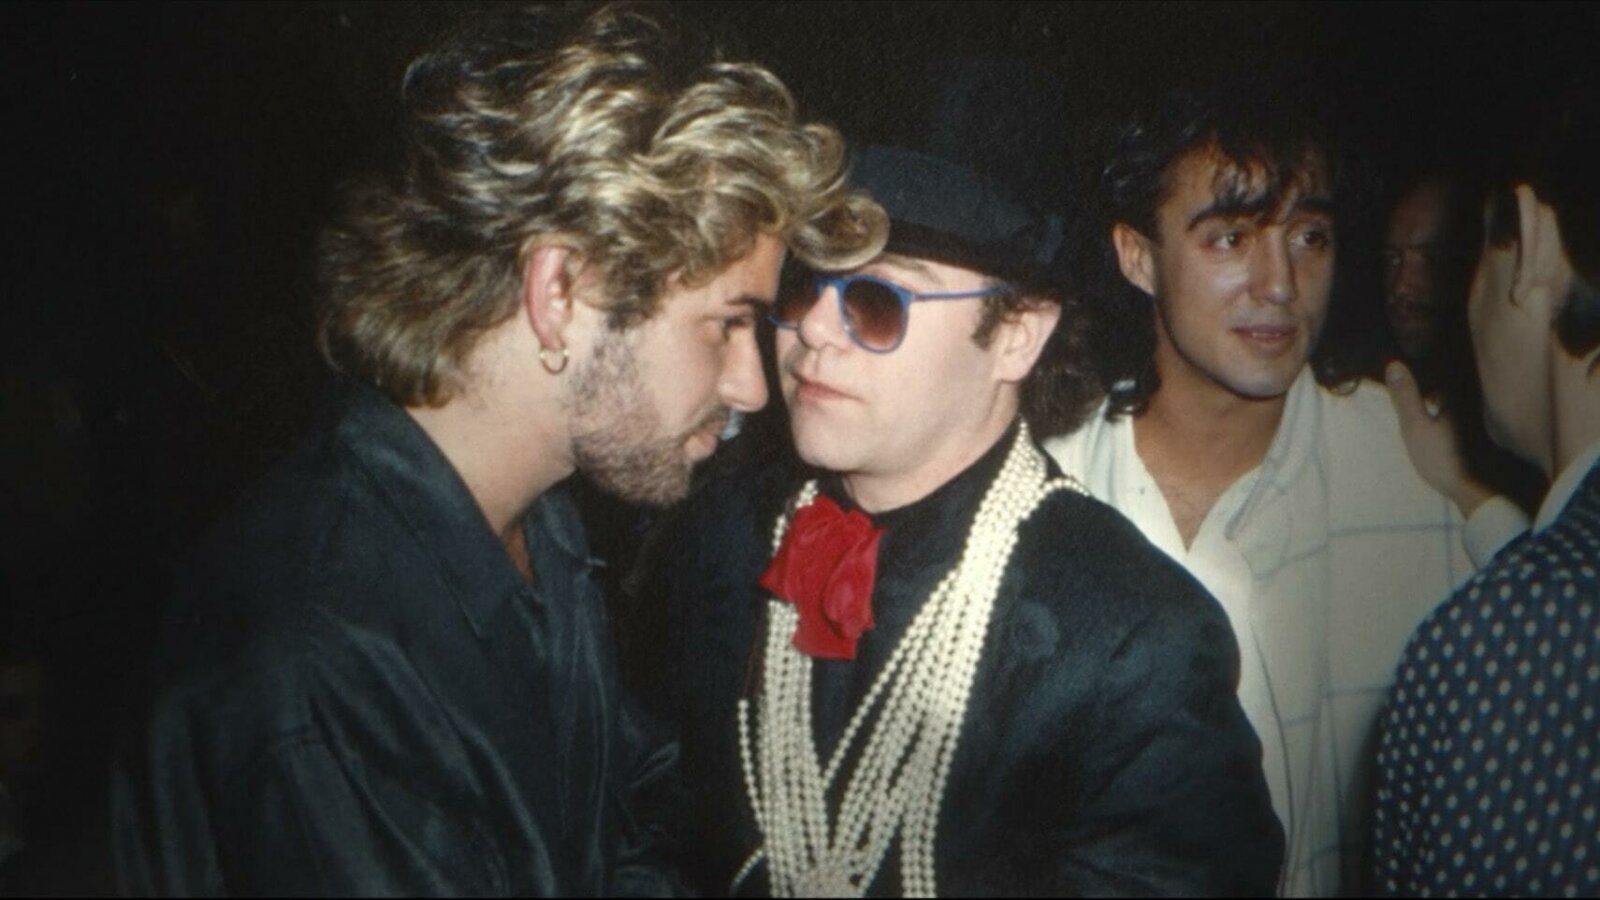 Eine Szene aus der Netflix-Doku WHAM!: Elton John sagte bei einer Preisverleihung 1985, dass George Michael „einer der besten Songwriter“ aus Großbritannien ist.